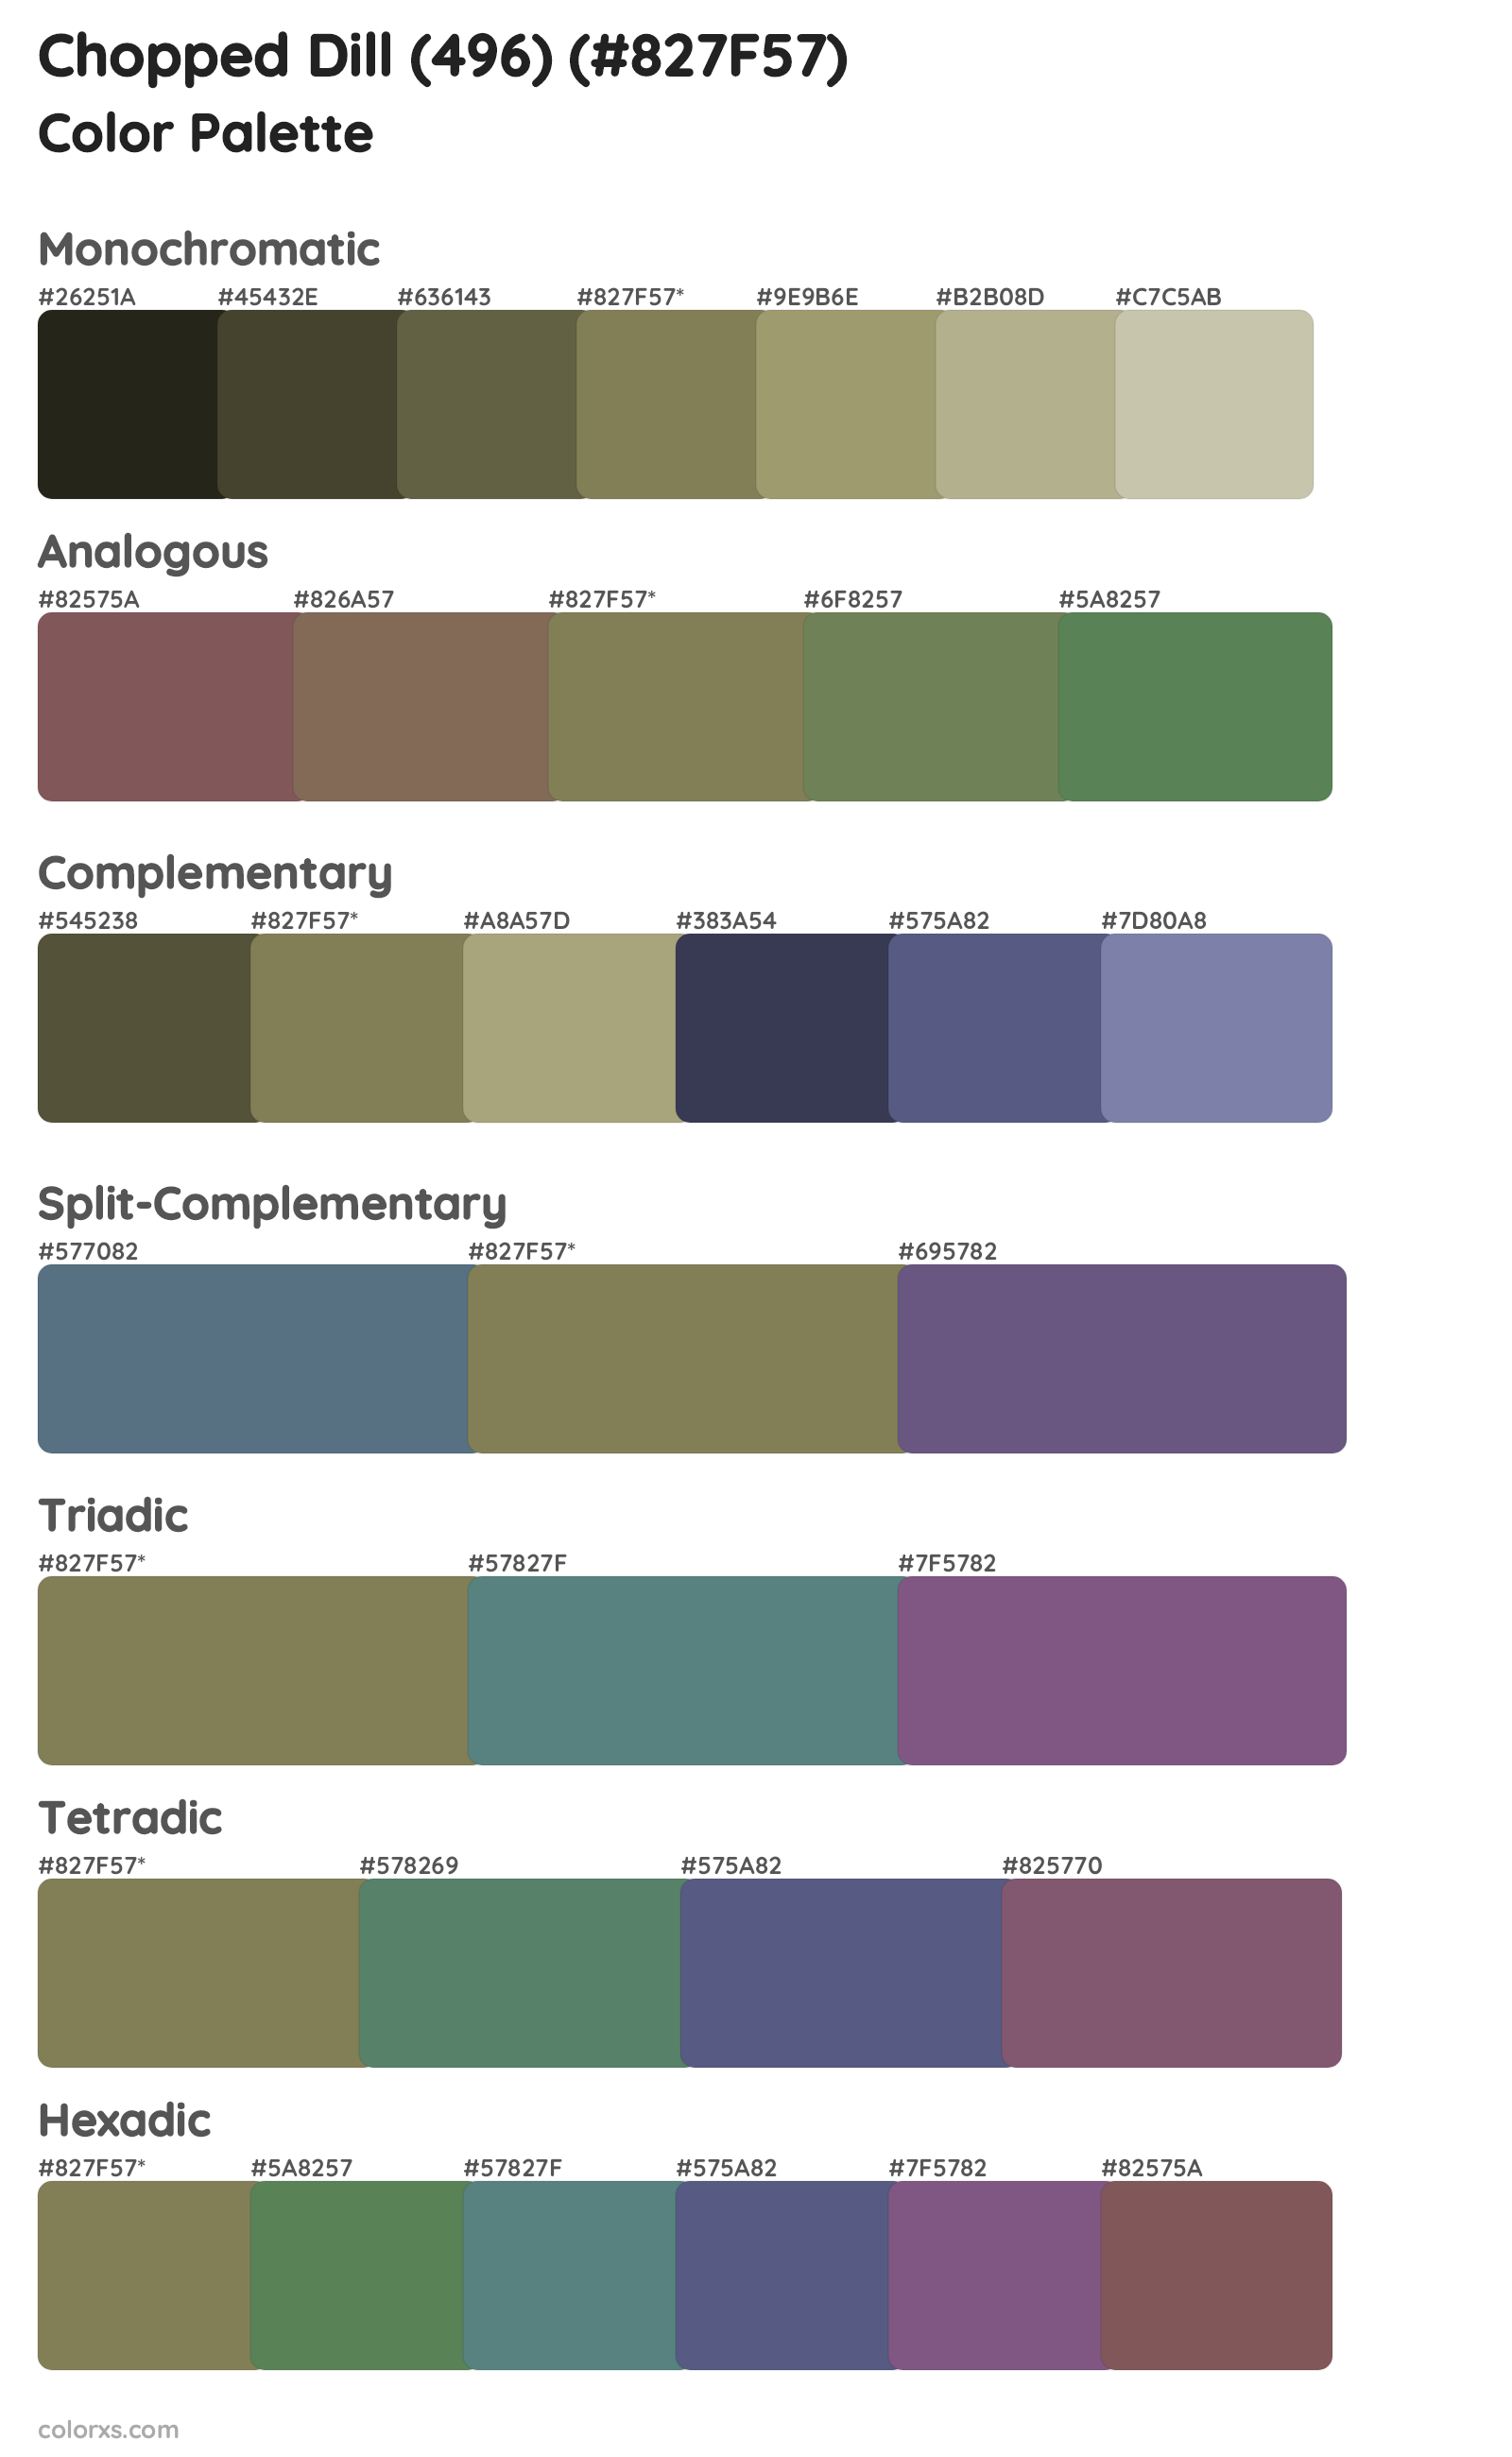 Chopped Dill (496) Color Scheme Palettes